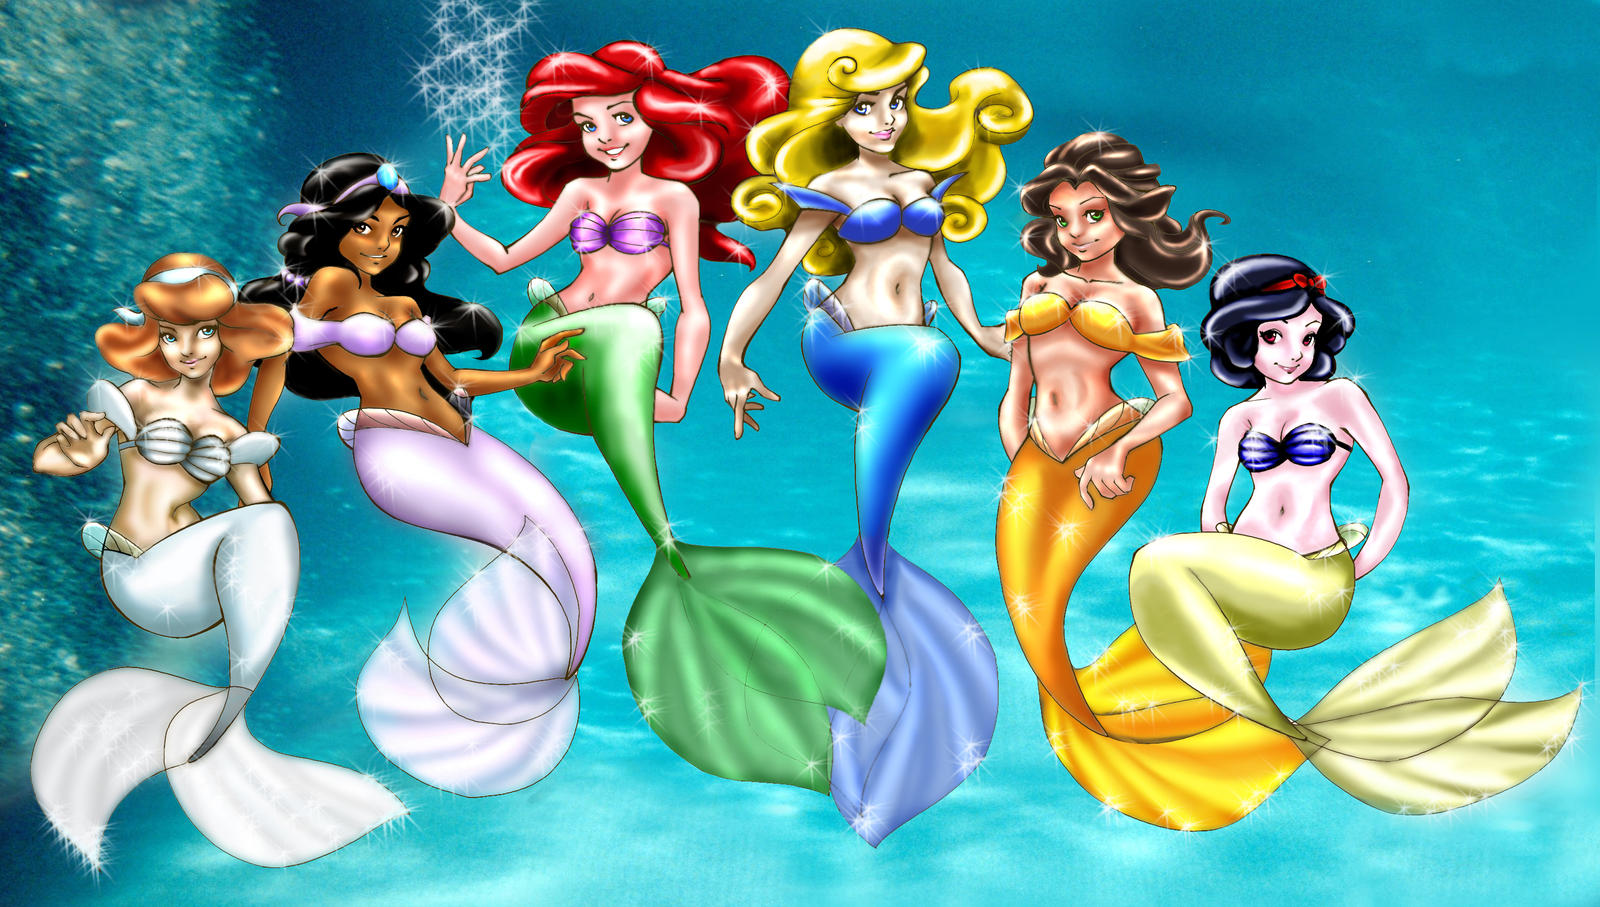 Loish's Mermaids